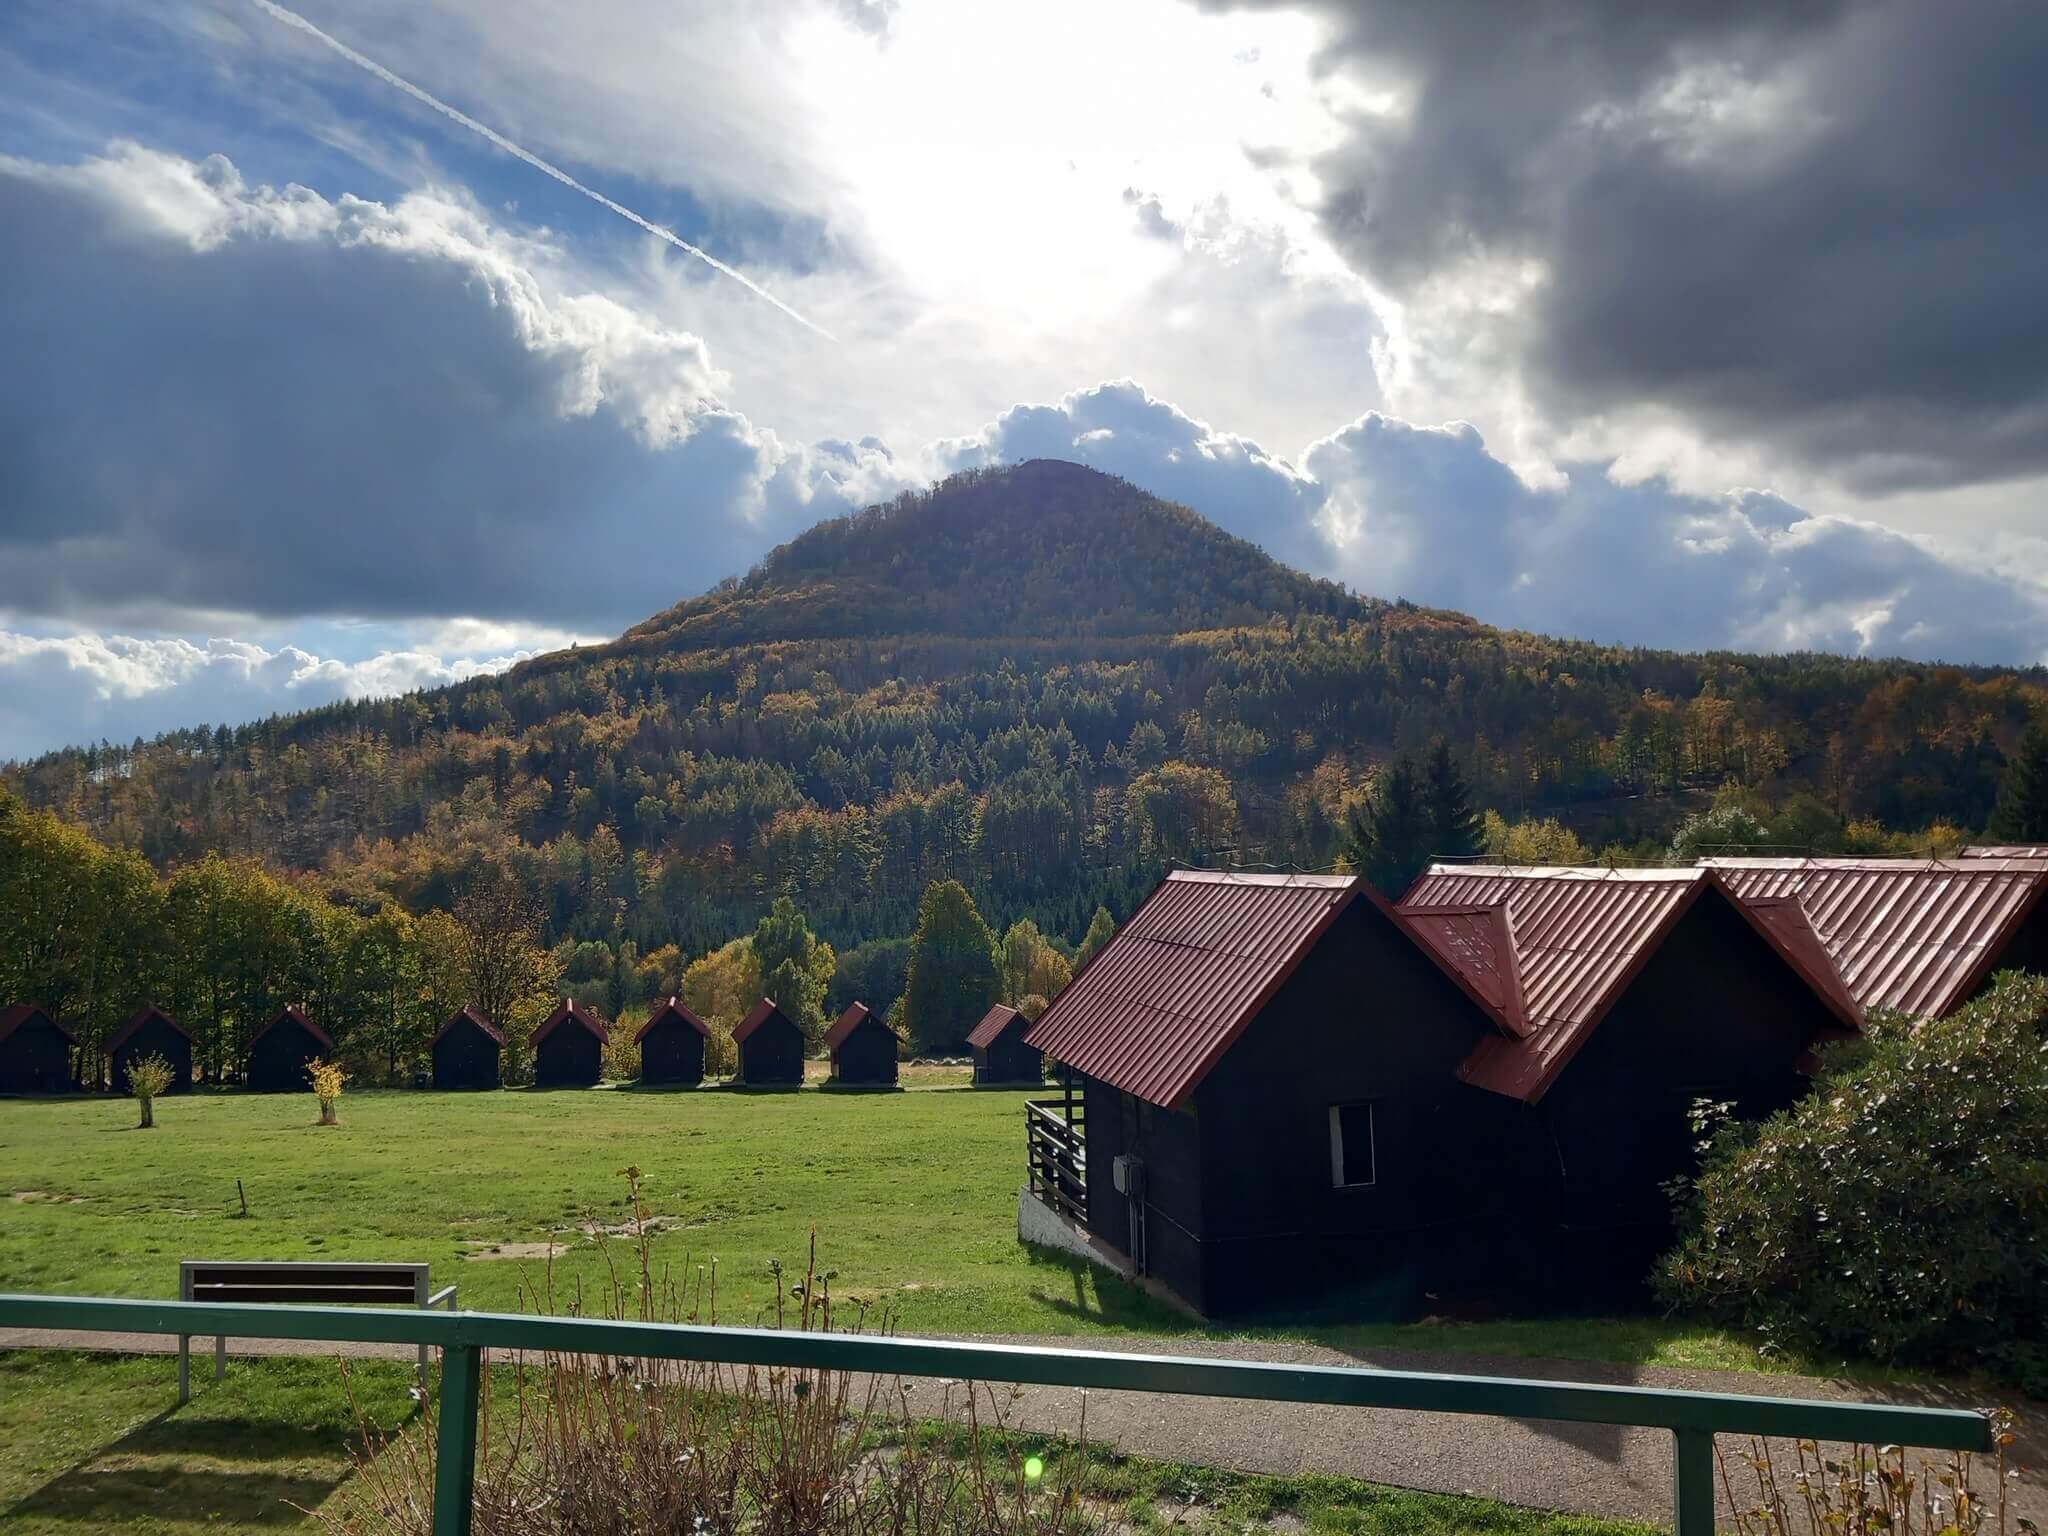 Rekreační středisko a nejvyšší hora Lužických hor Klíč v záři slunce prosvítajícího mezi mraky na podzimním dětském táboře.